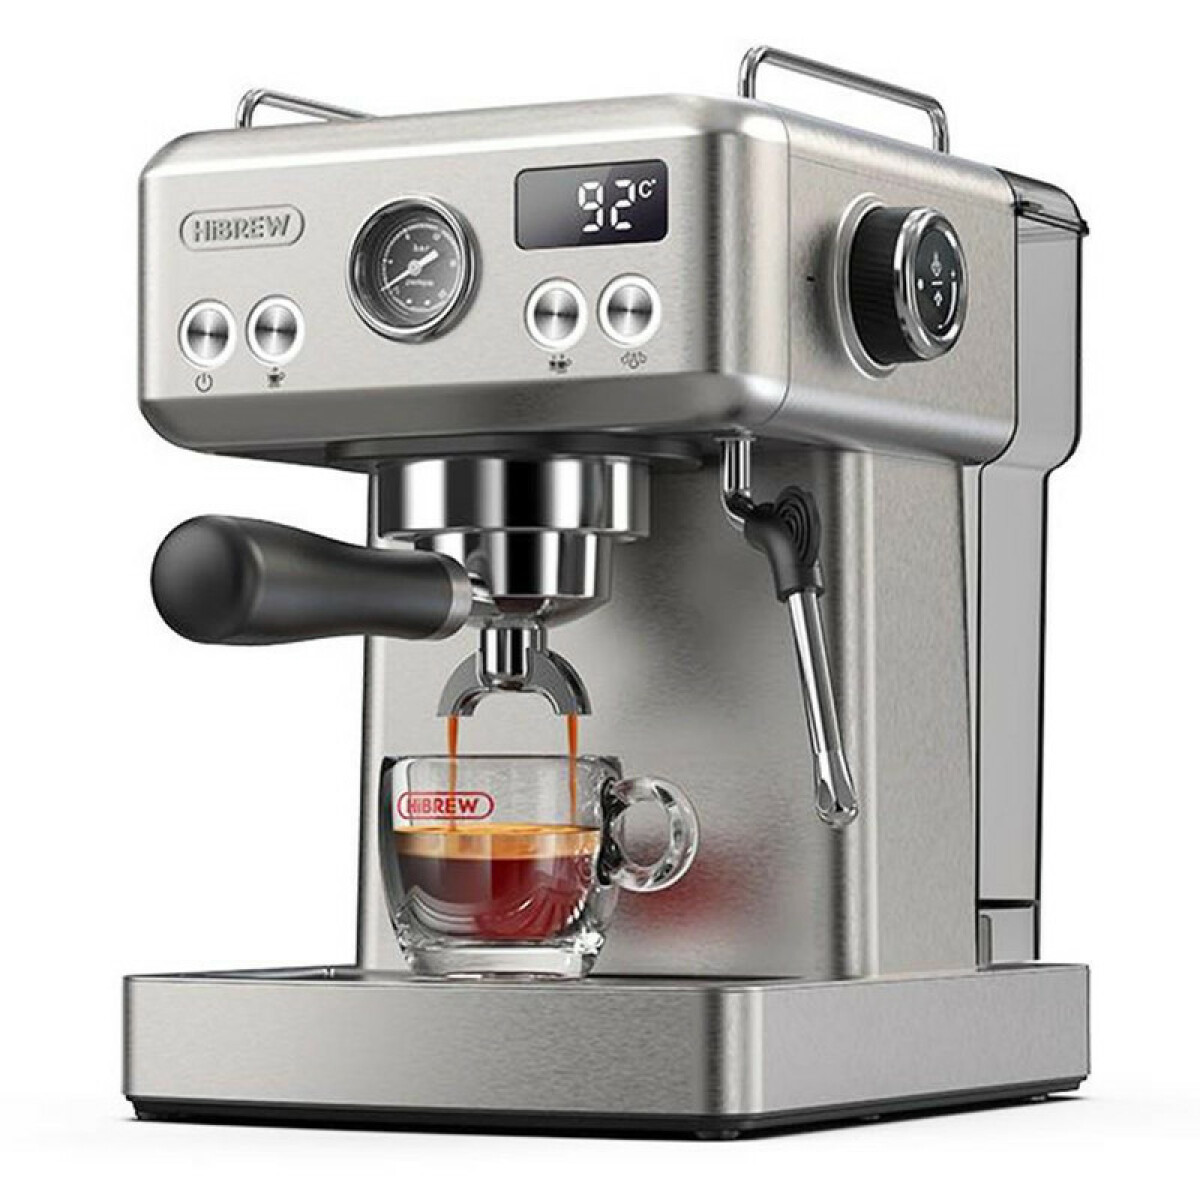 HiBREW HiBREW H10A Machine à café expresso semi-automatique 19 bars, cafetière froide/chaude